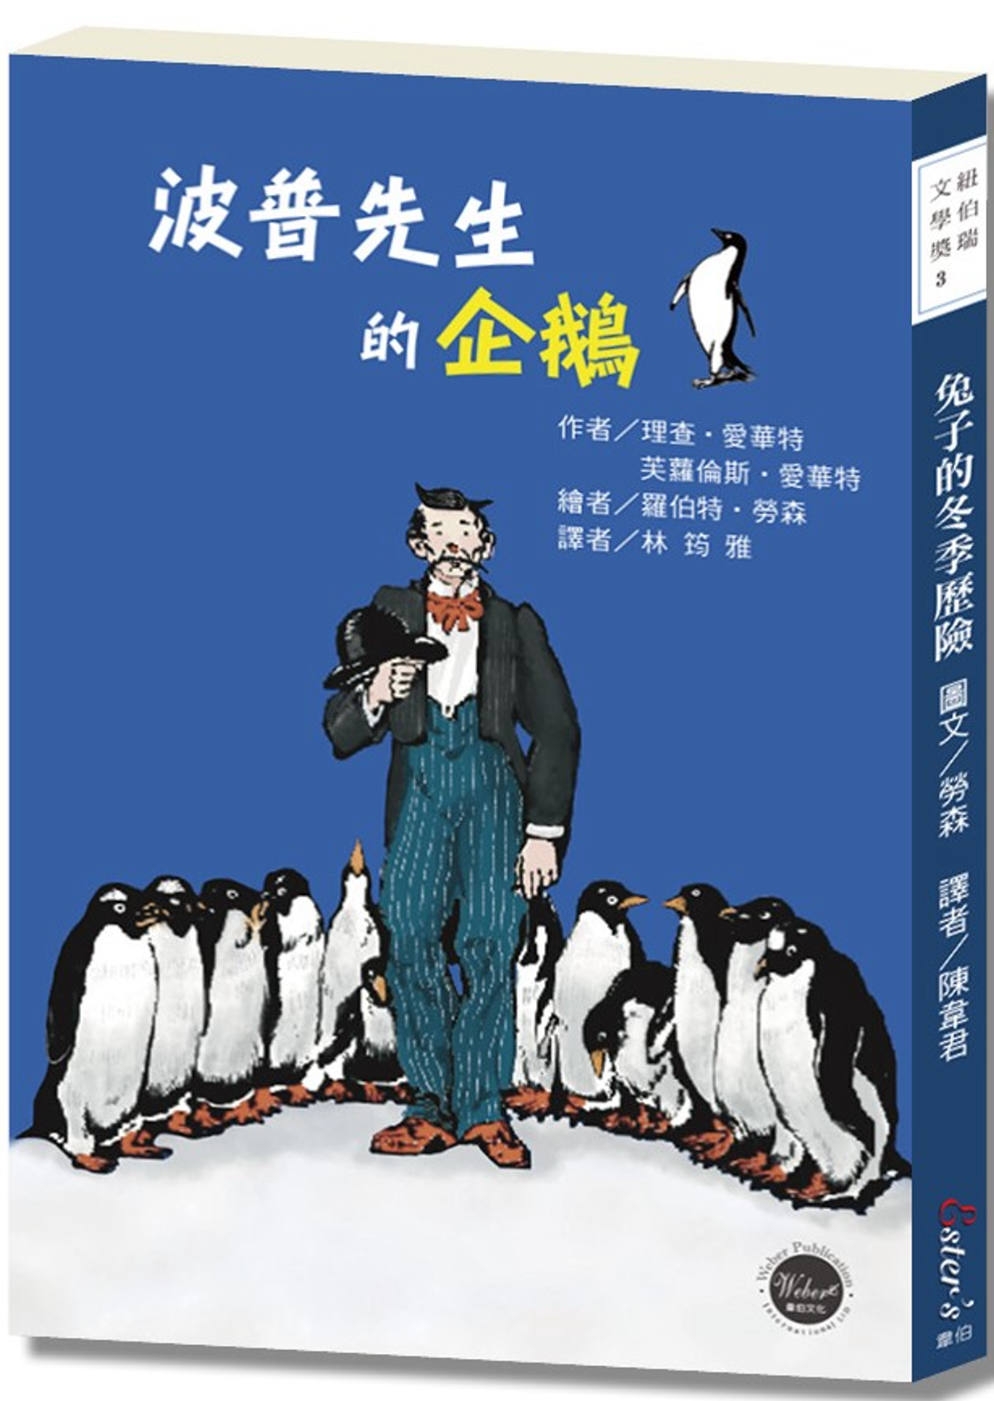 紐伯瑞文學獎1：波普先生的企鵝【曾被改編為好萊塢電影的經典雋永傳世之作!】